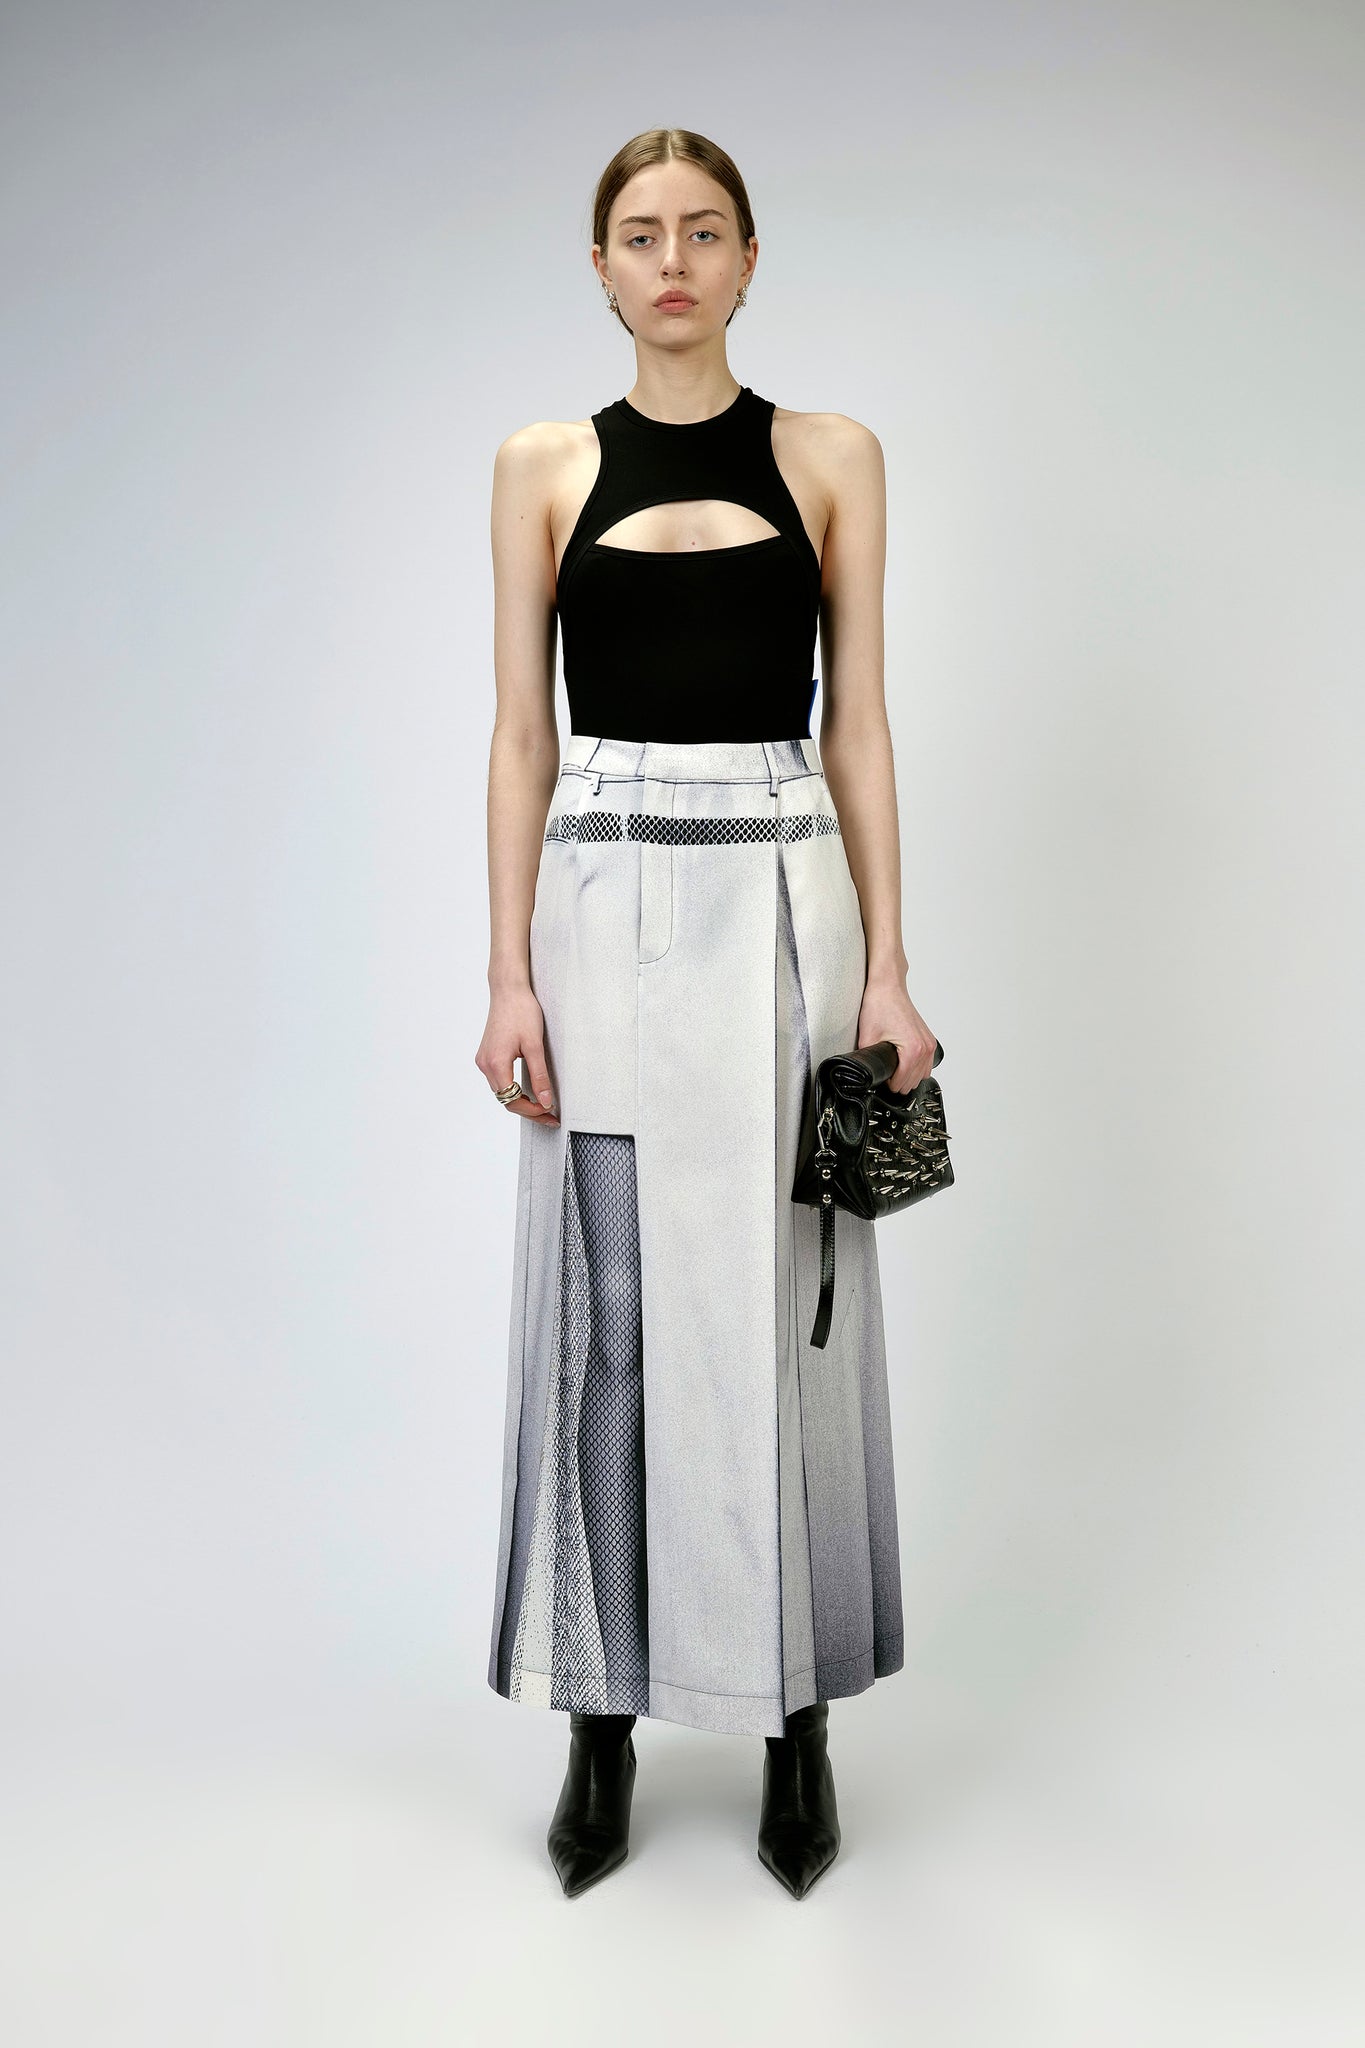 White Photocopy Series Skirt